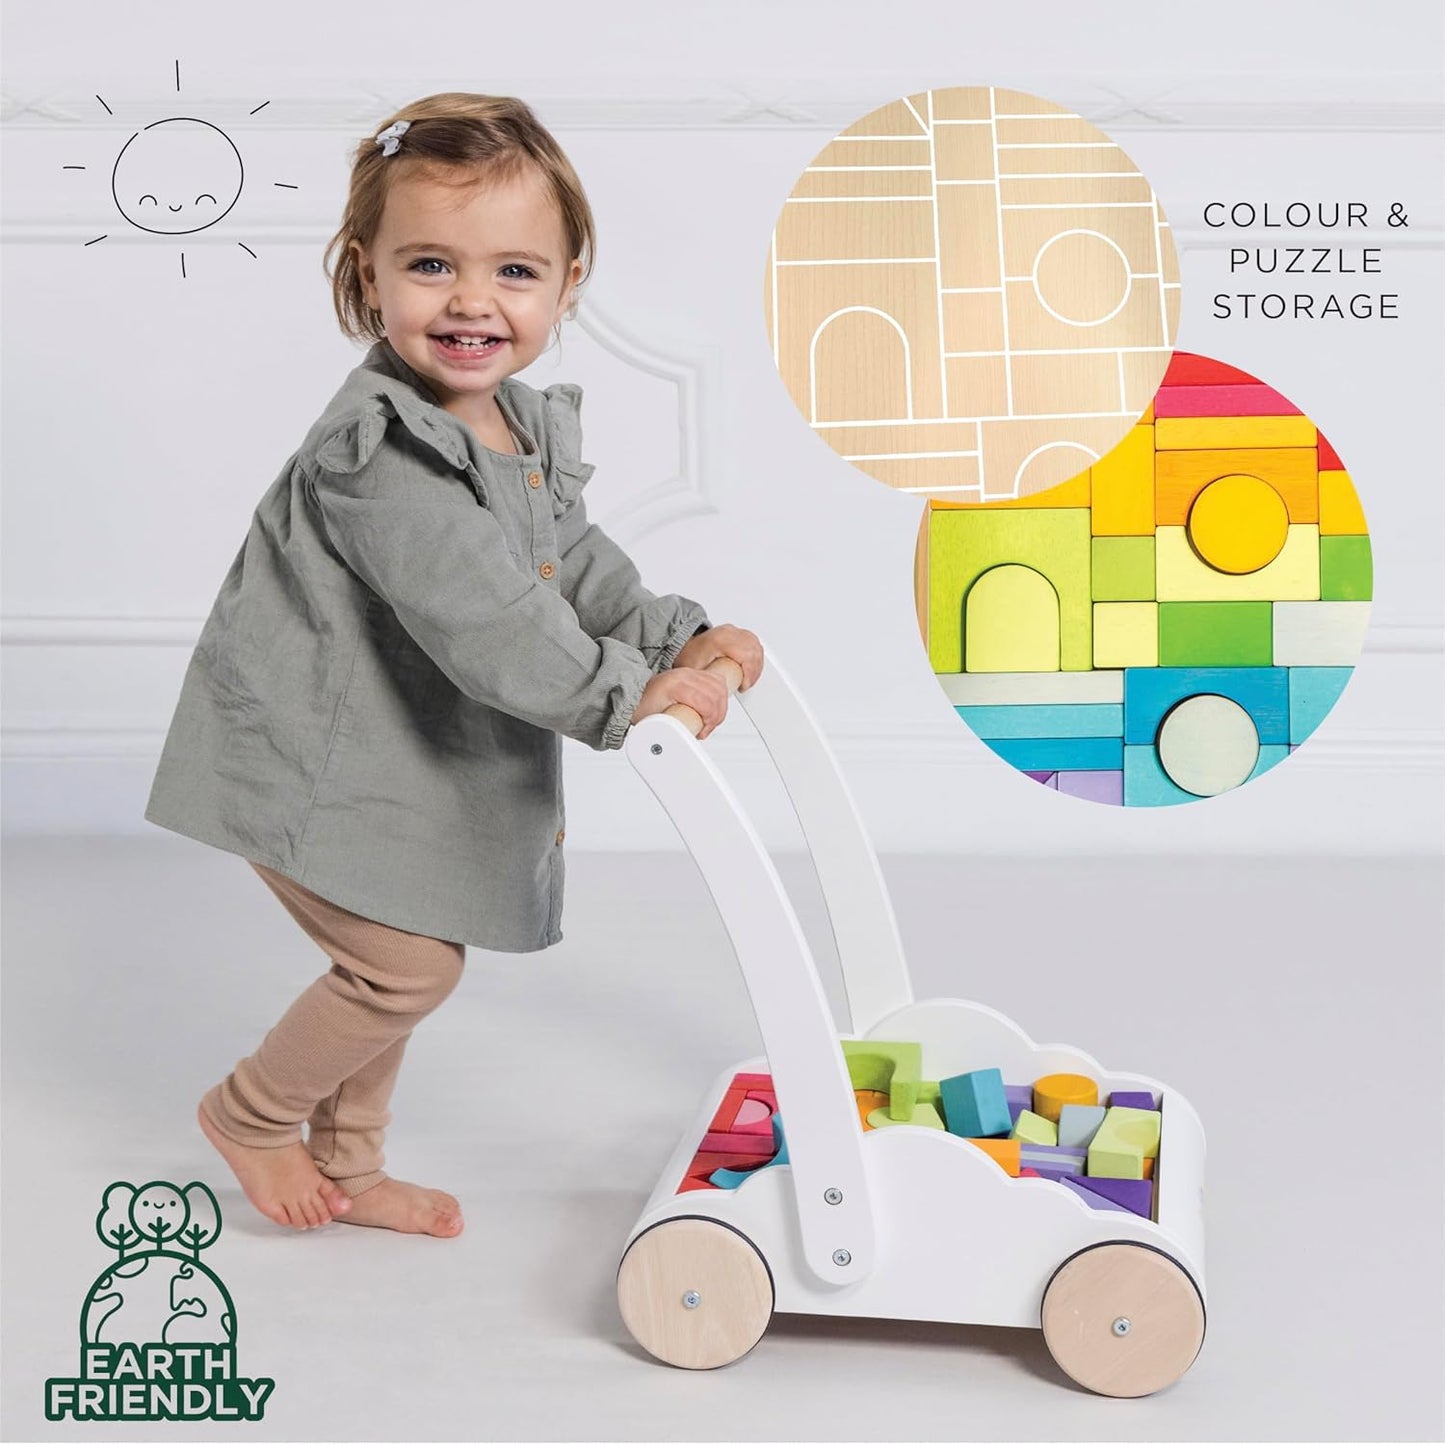 Le Toy Van - Brinquedo educacional de madeira Petilou Rainbow Cloud Walker para crianças e bebês | Adequado para menino ou menina de 1 ano +